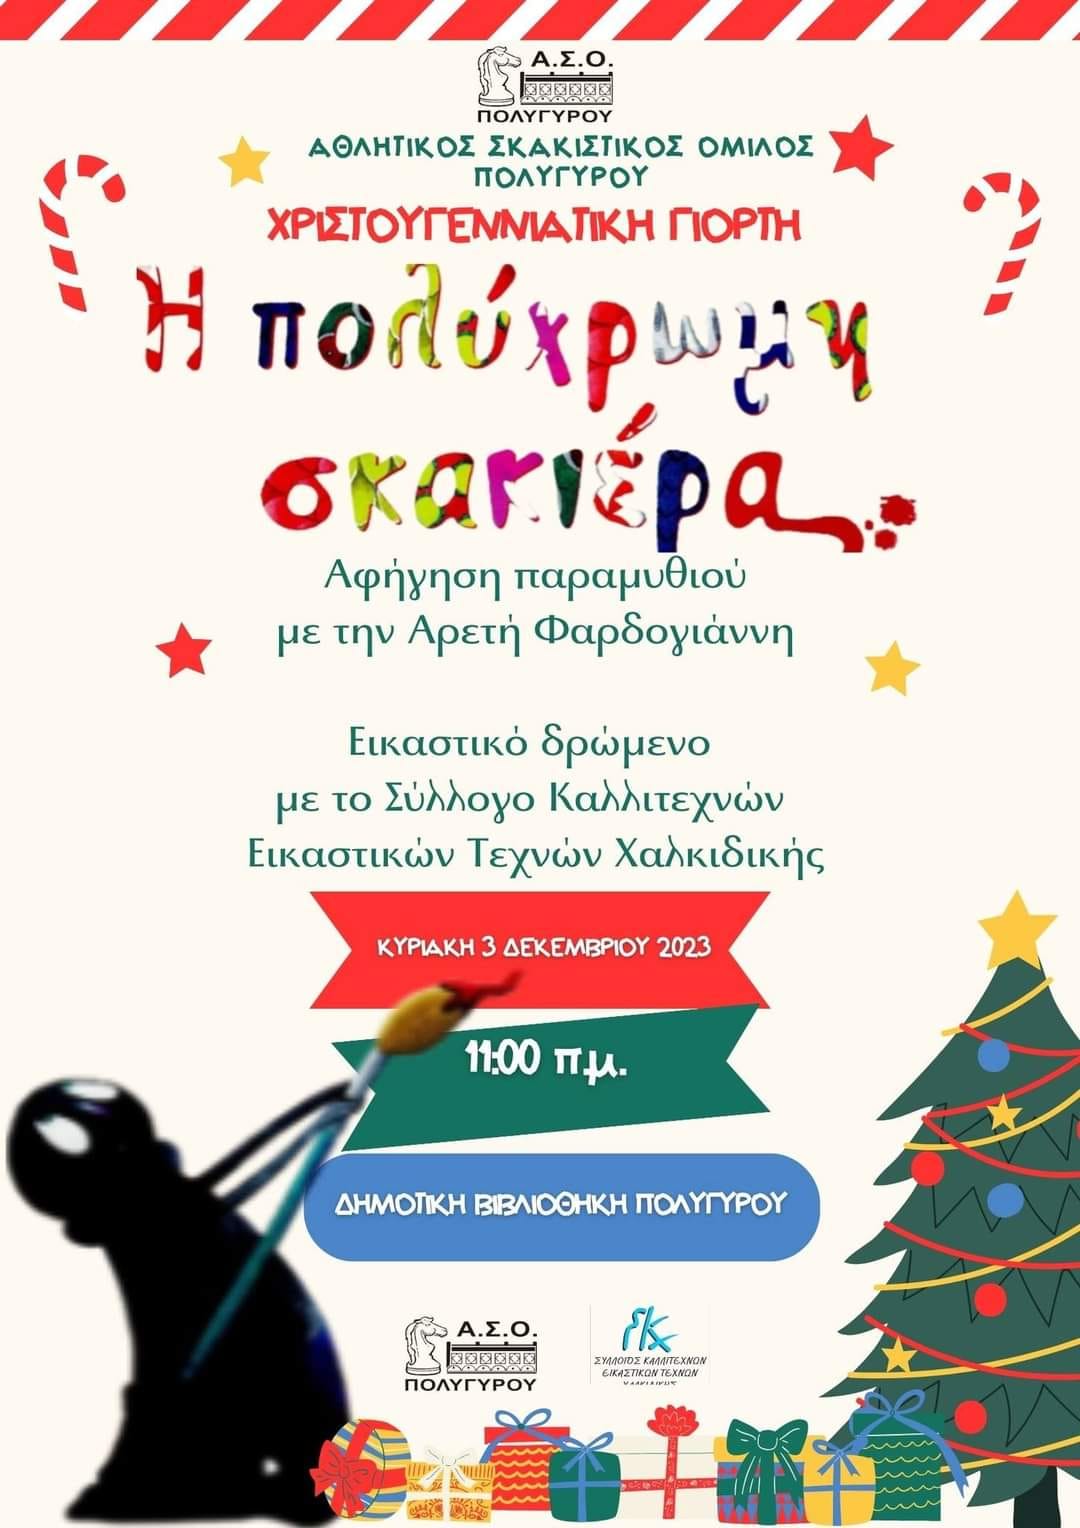 Χριστουγεννιάτικη γιορτή Αθλητικού Σκακιστικού Ομίλου Πολυγύρου